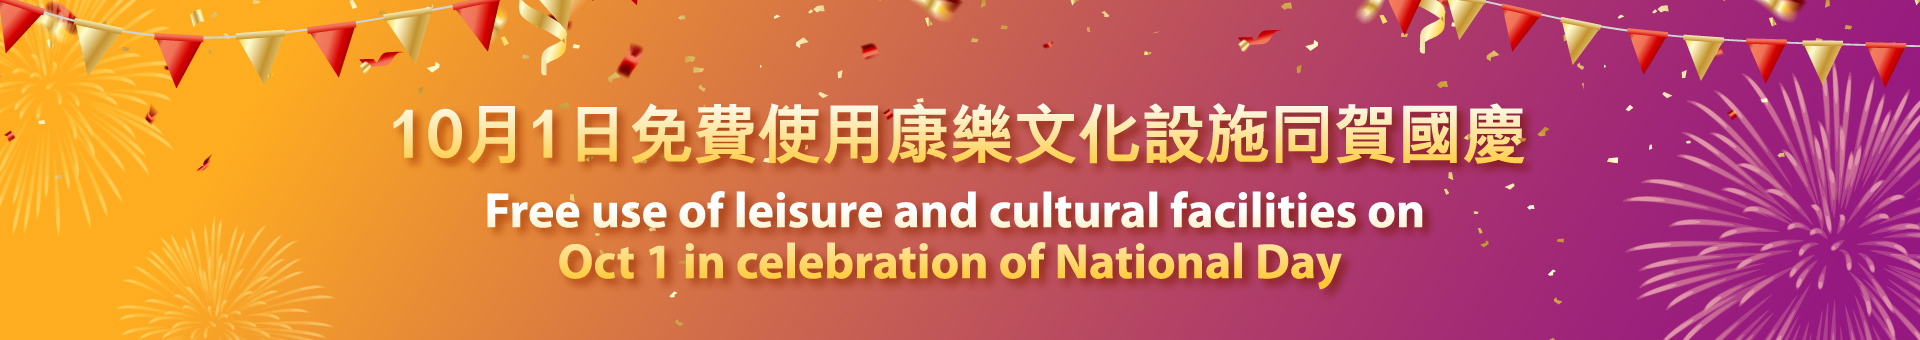 10月1日免費使用康樂文化設施同賀國慶